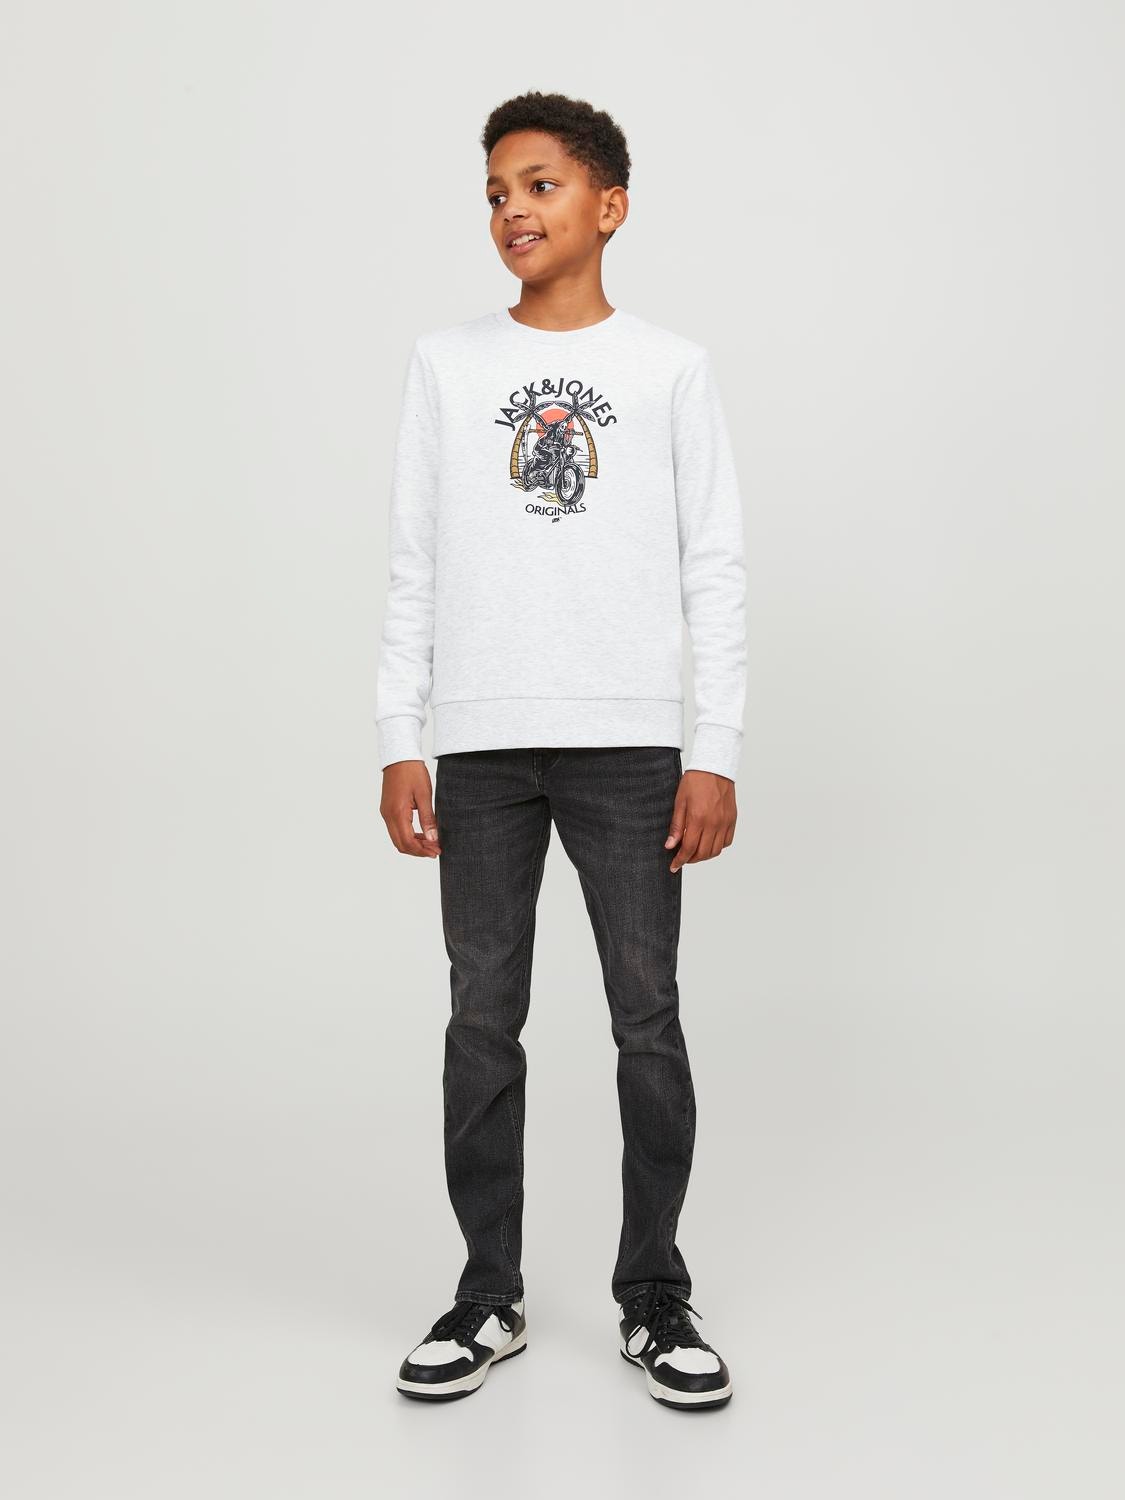 Jack & Jones Gedruckt Sweatshirt mit Rundhals Für jungs -White Melange - 12247870